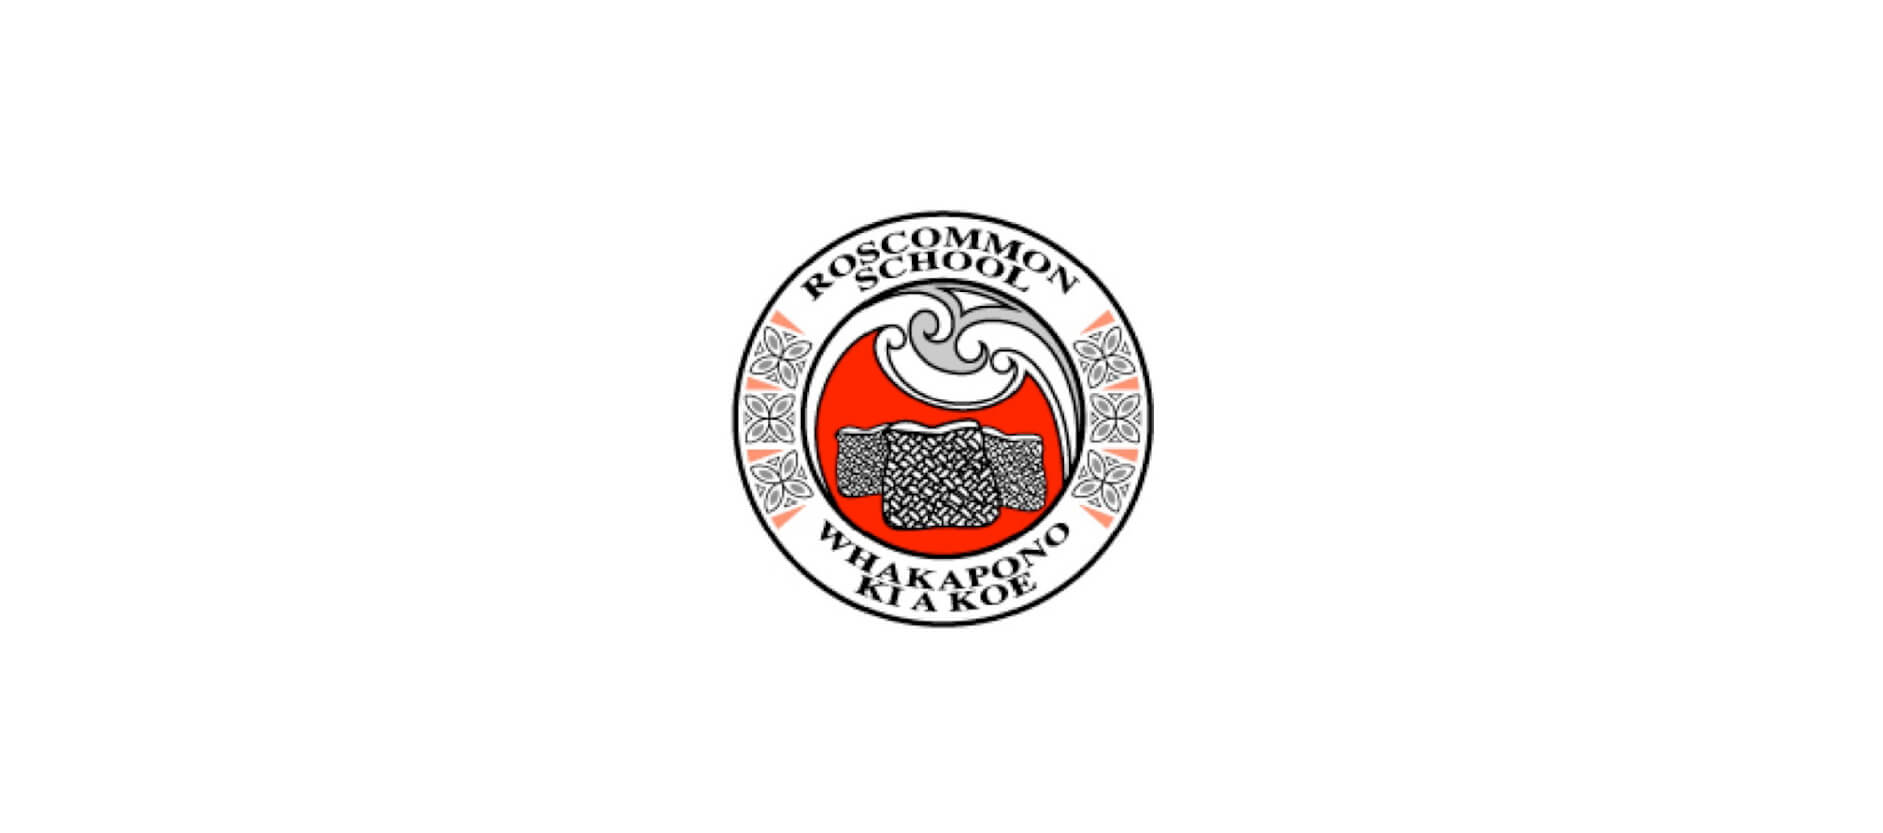 roscommon school logo